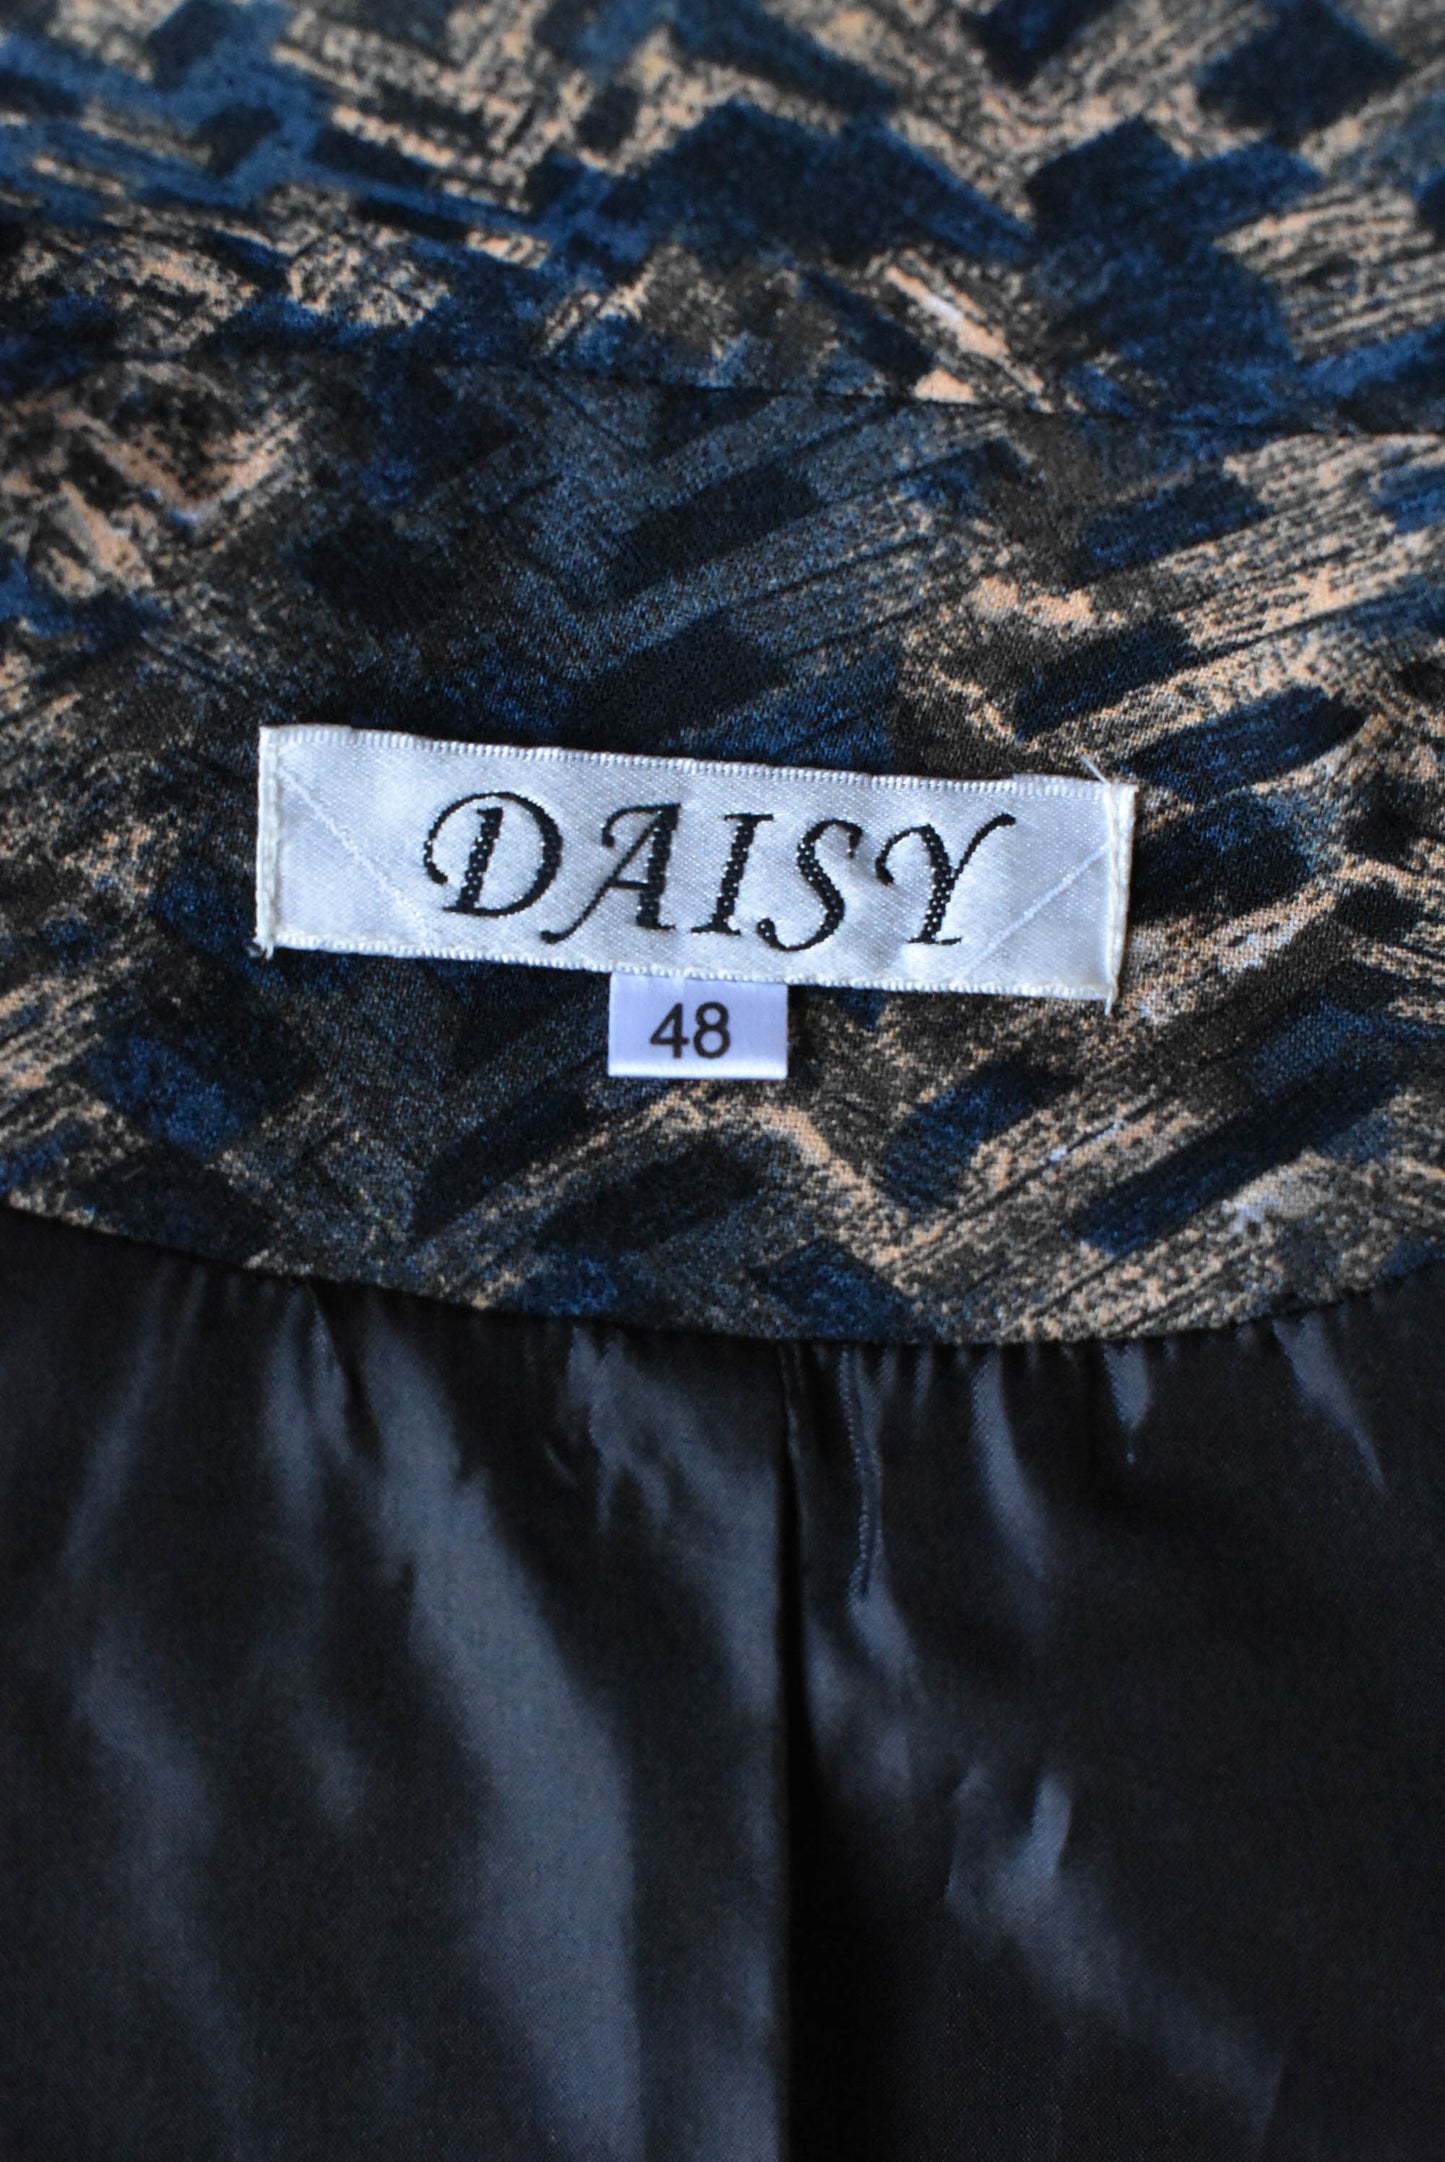 Daisy herringbone shoulder-padded blazer, size 48